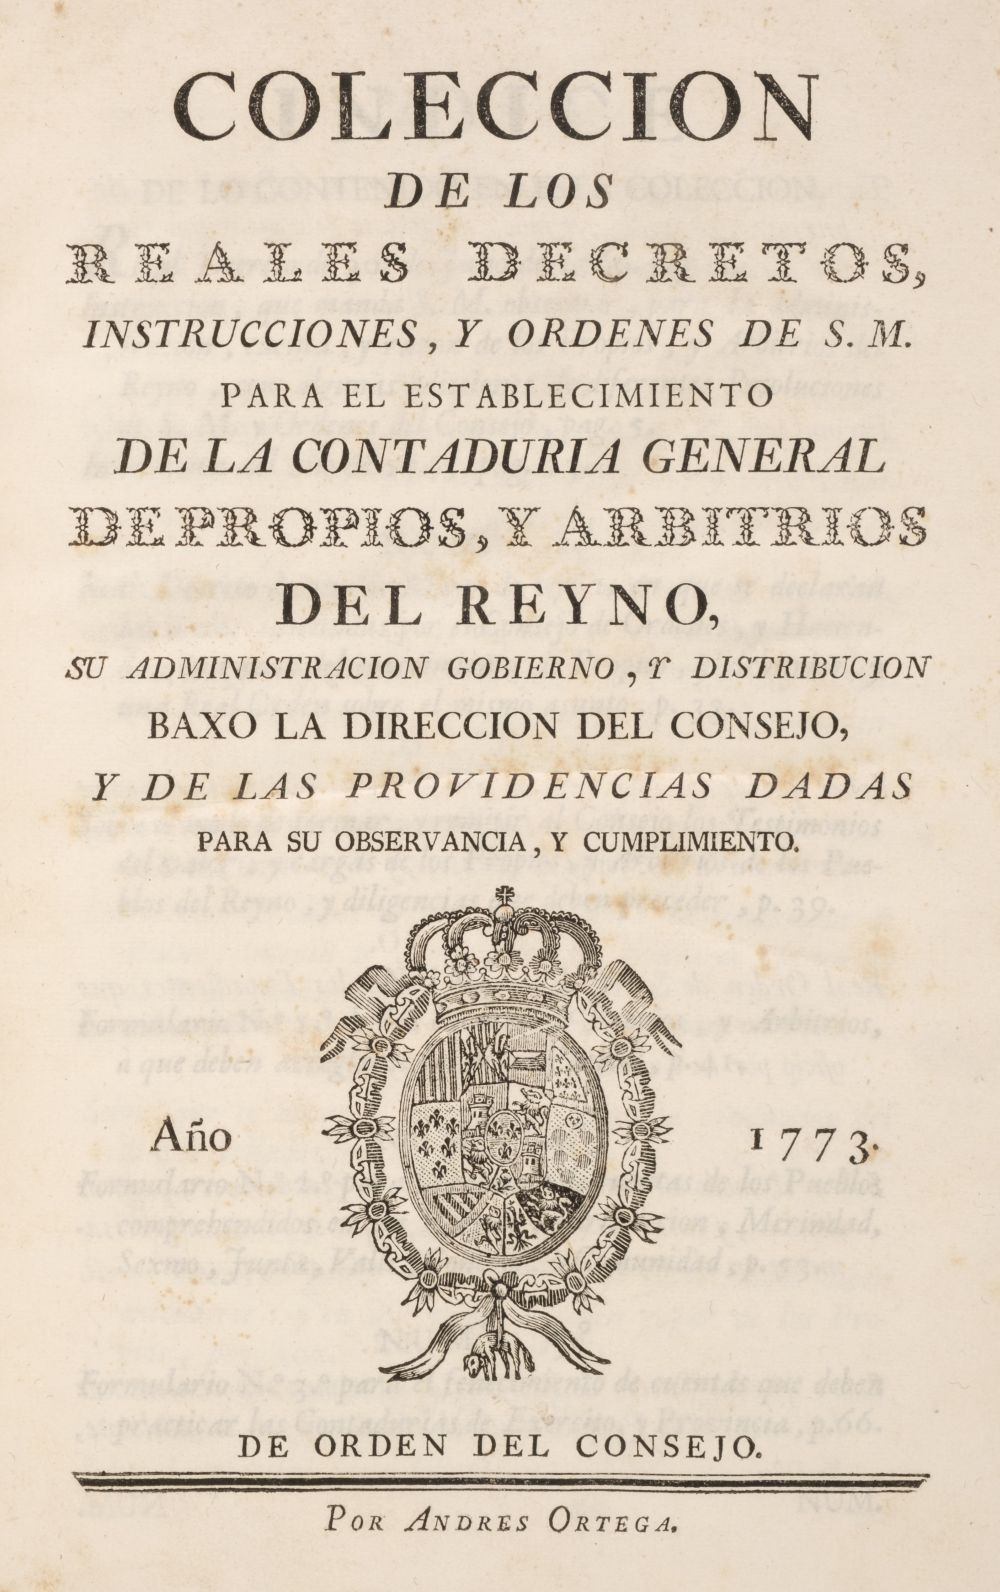 Coleccion de los Reales Decretos, Instrucciones, y Ordenes, Madrid, 1773